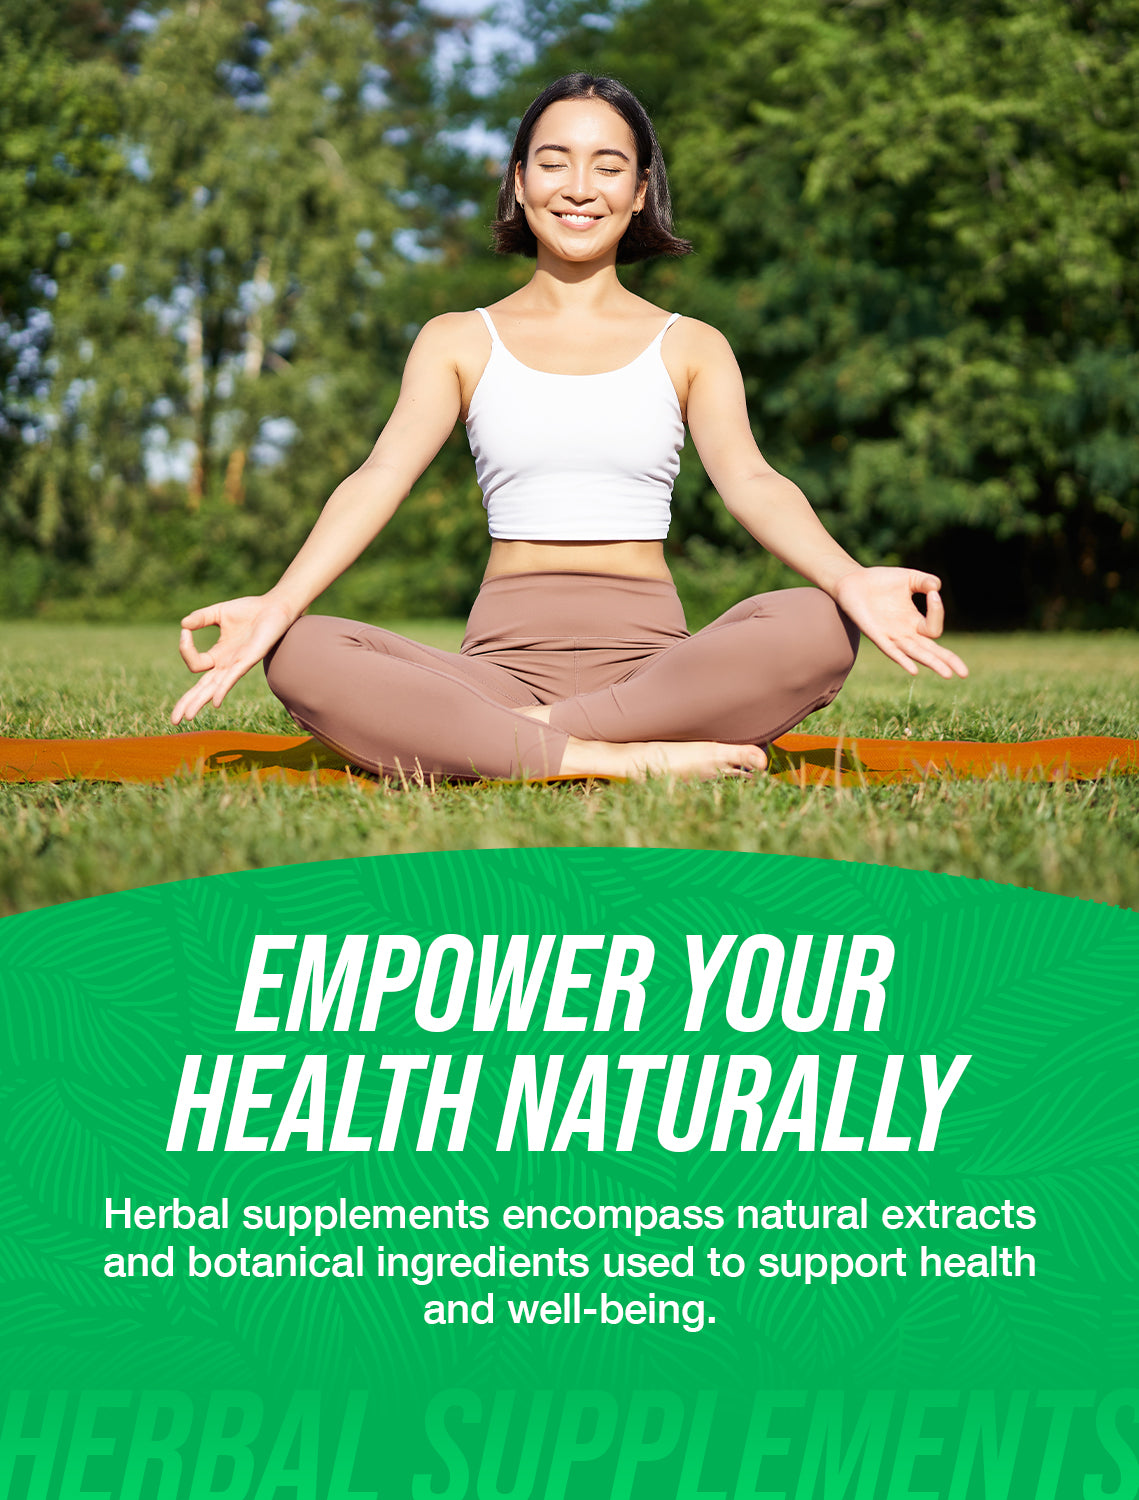 Herbal supplements benefit